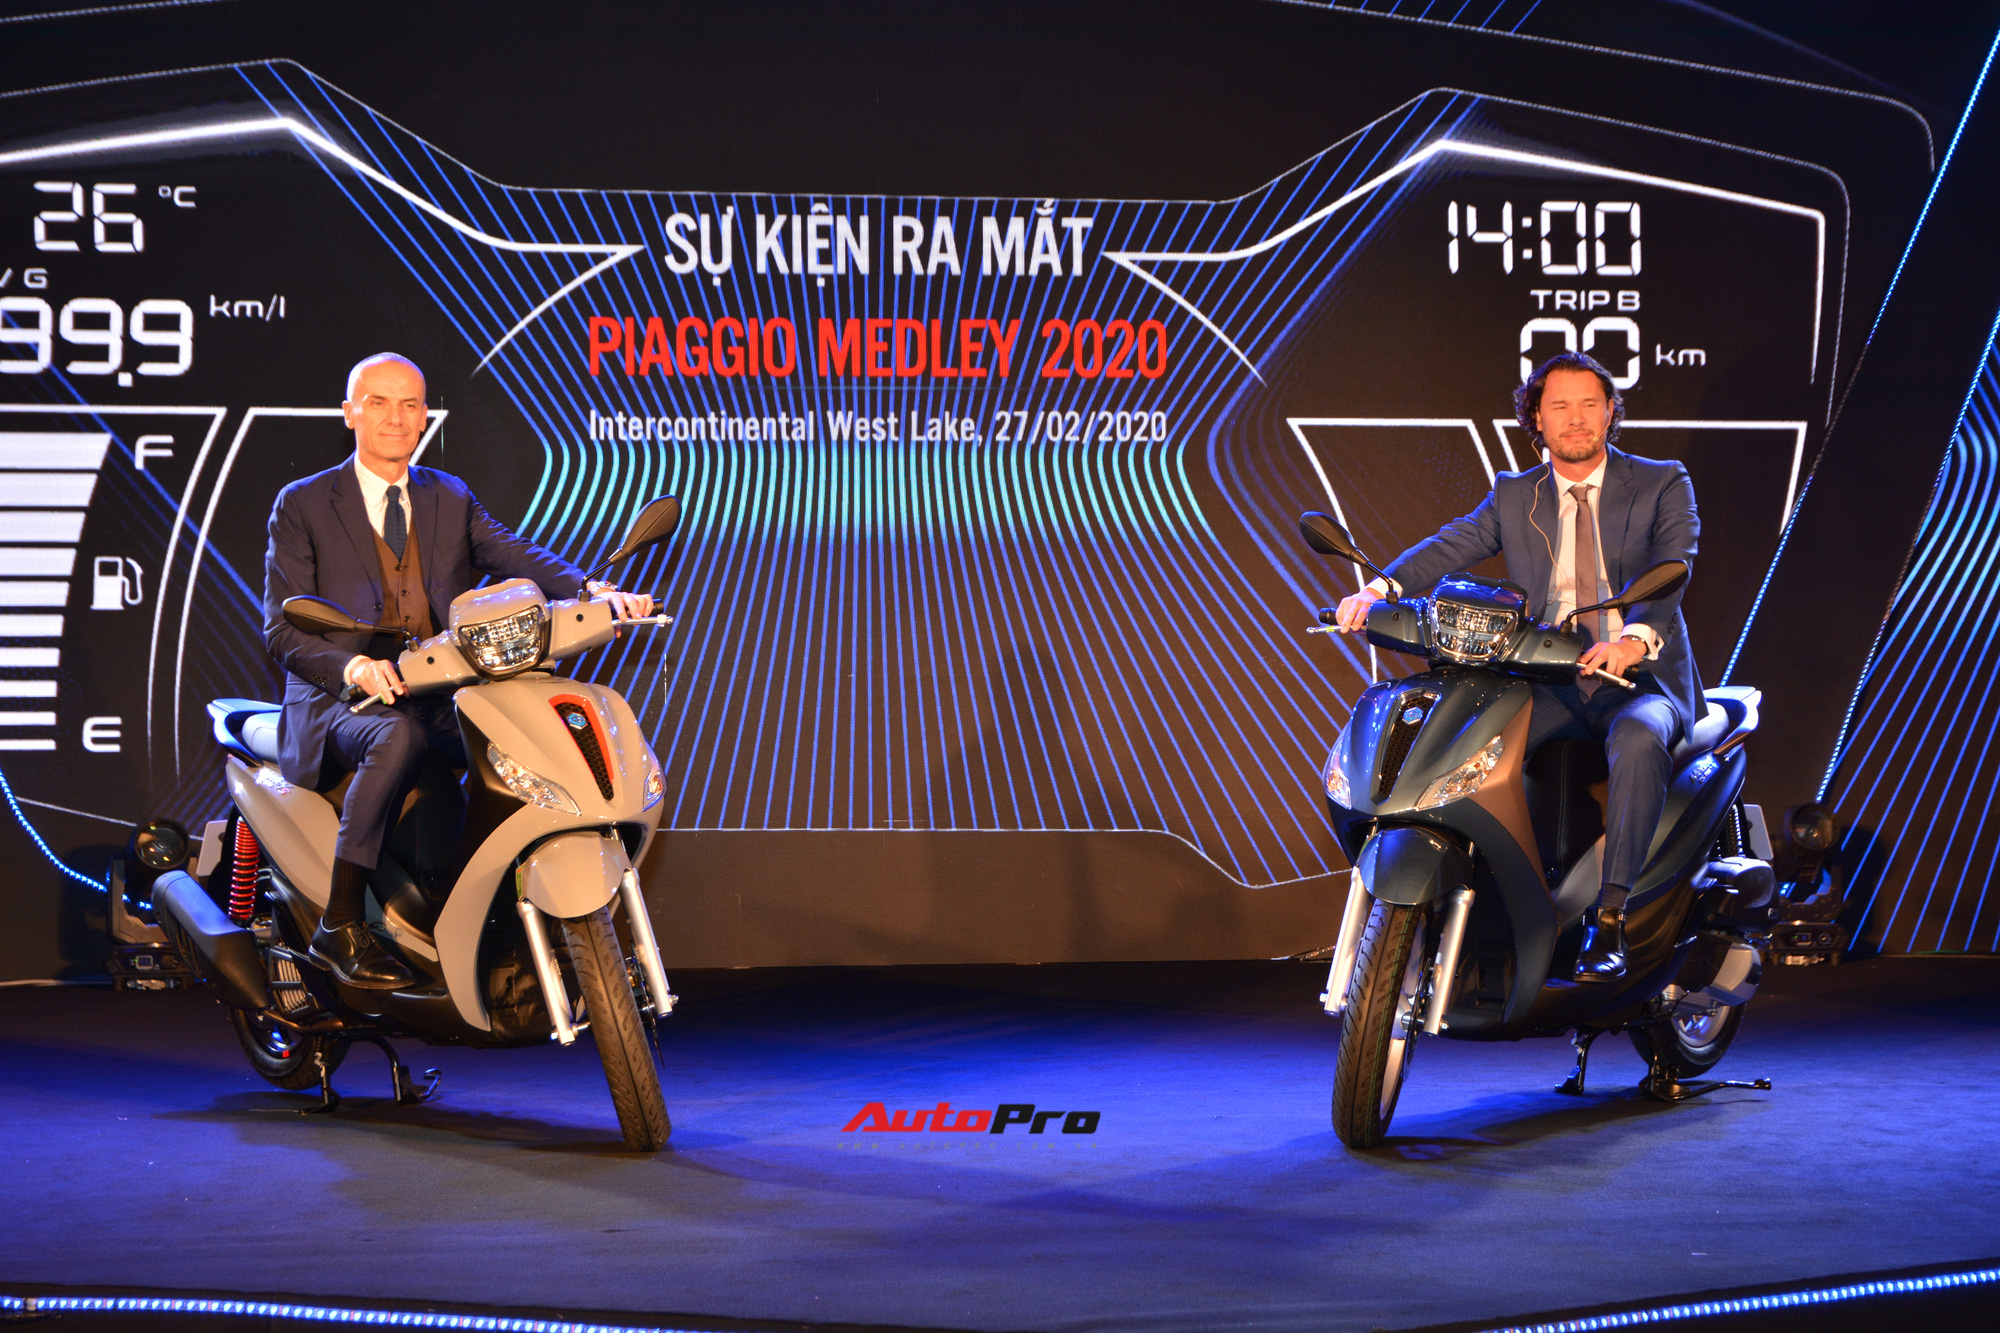 Ra mắt Piaggio Medley 2020 - Đấu Honda SH bằng giá bán từ 75 triệu đồng - Ảnh 1.